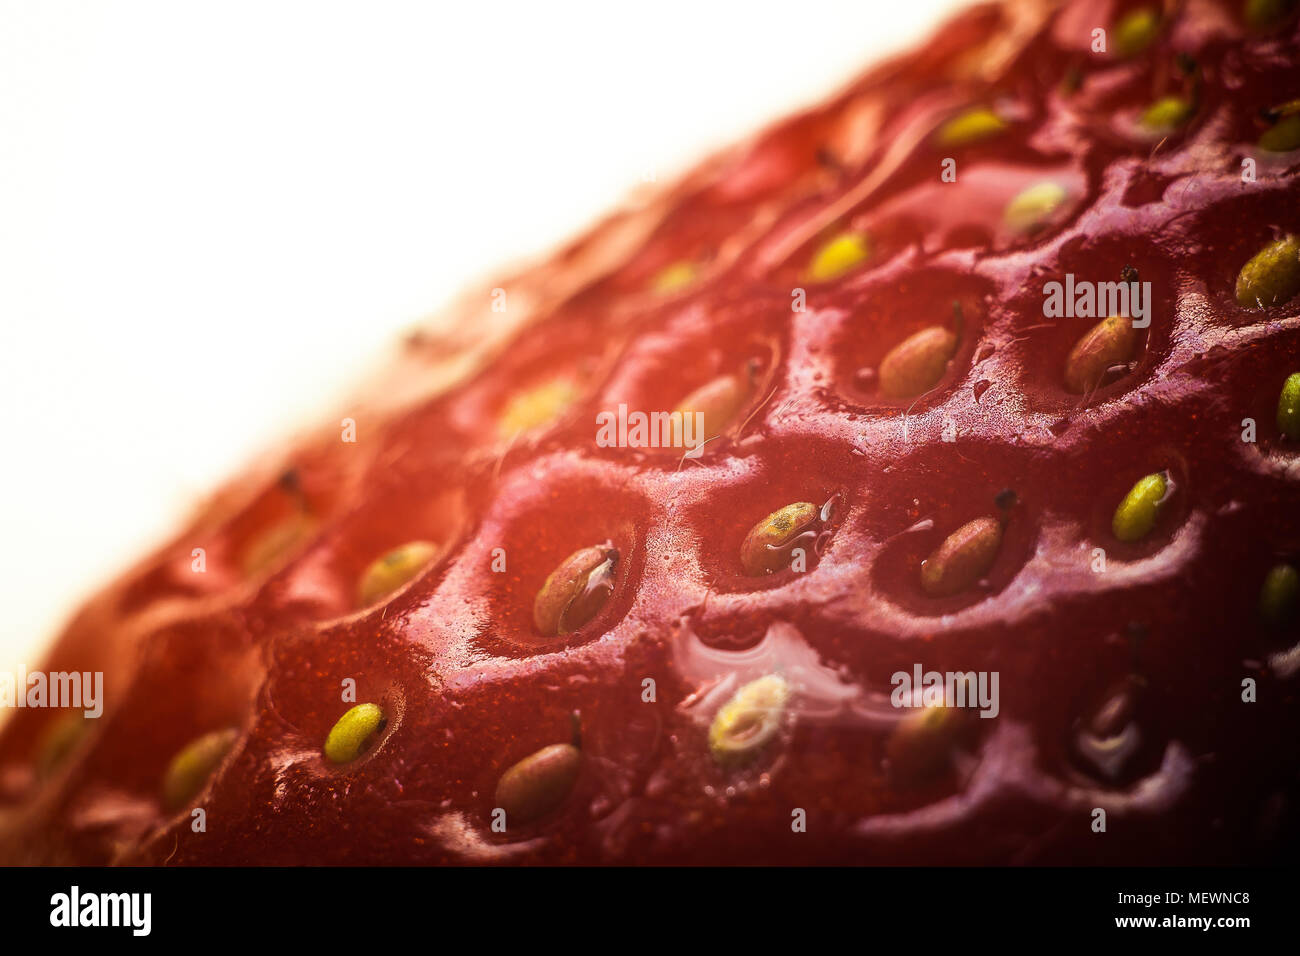 Dettaglio dei semi di una fragola rossa su uno sfondo bianco Foto Stock